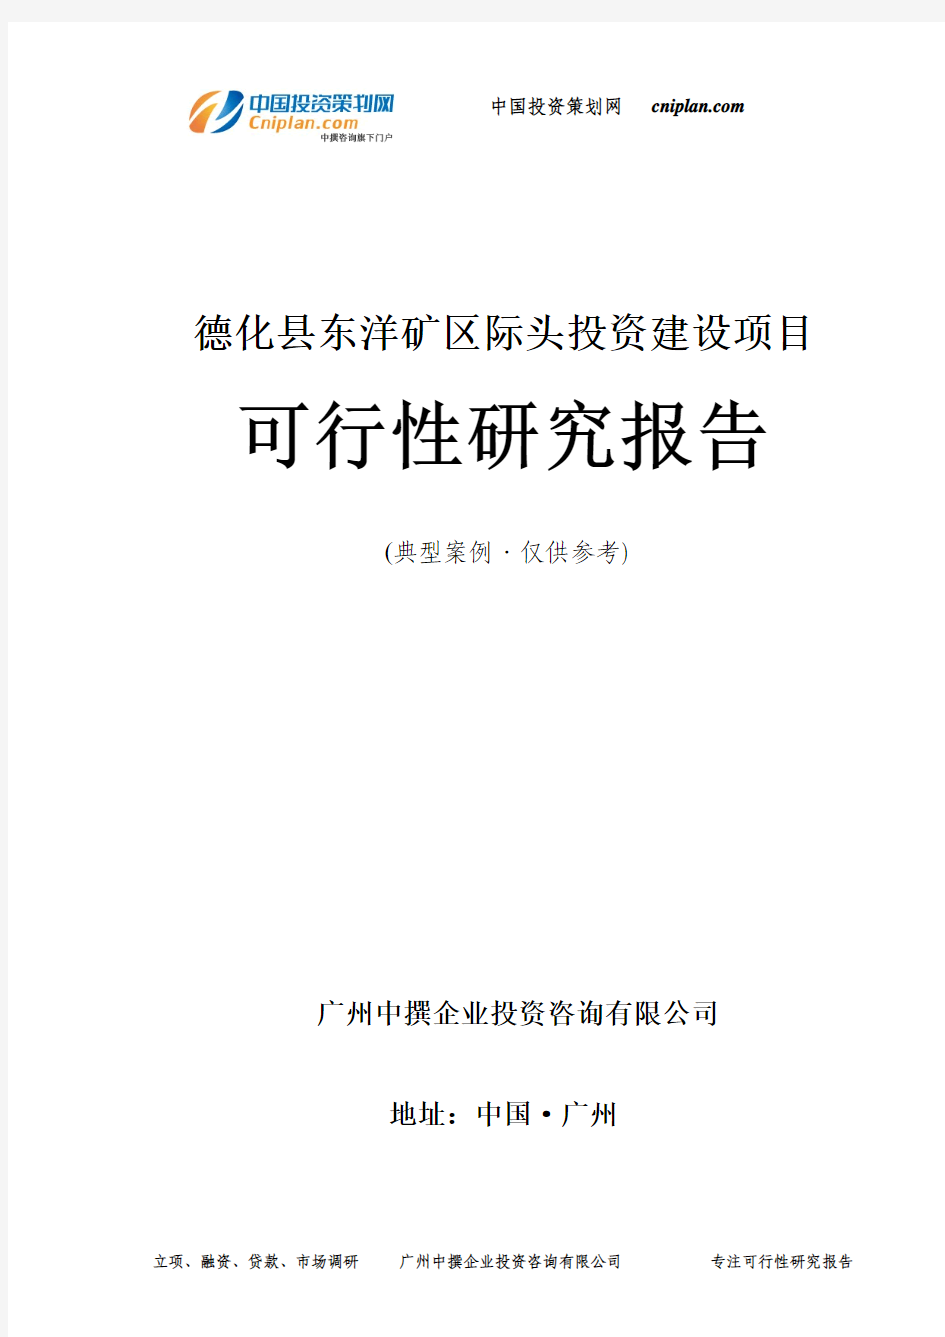 德化县东洋矿区际头投资建设项目可行性研究报告-广州中撰咨询